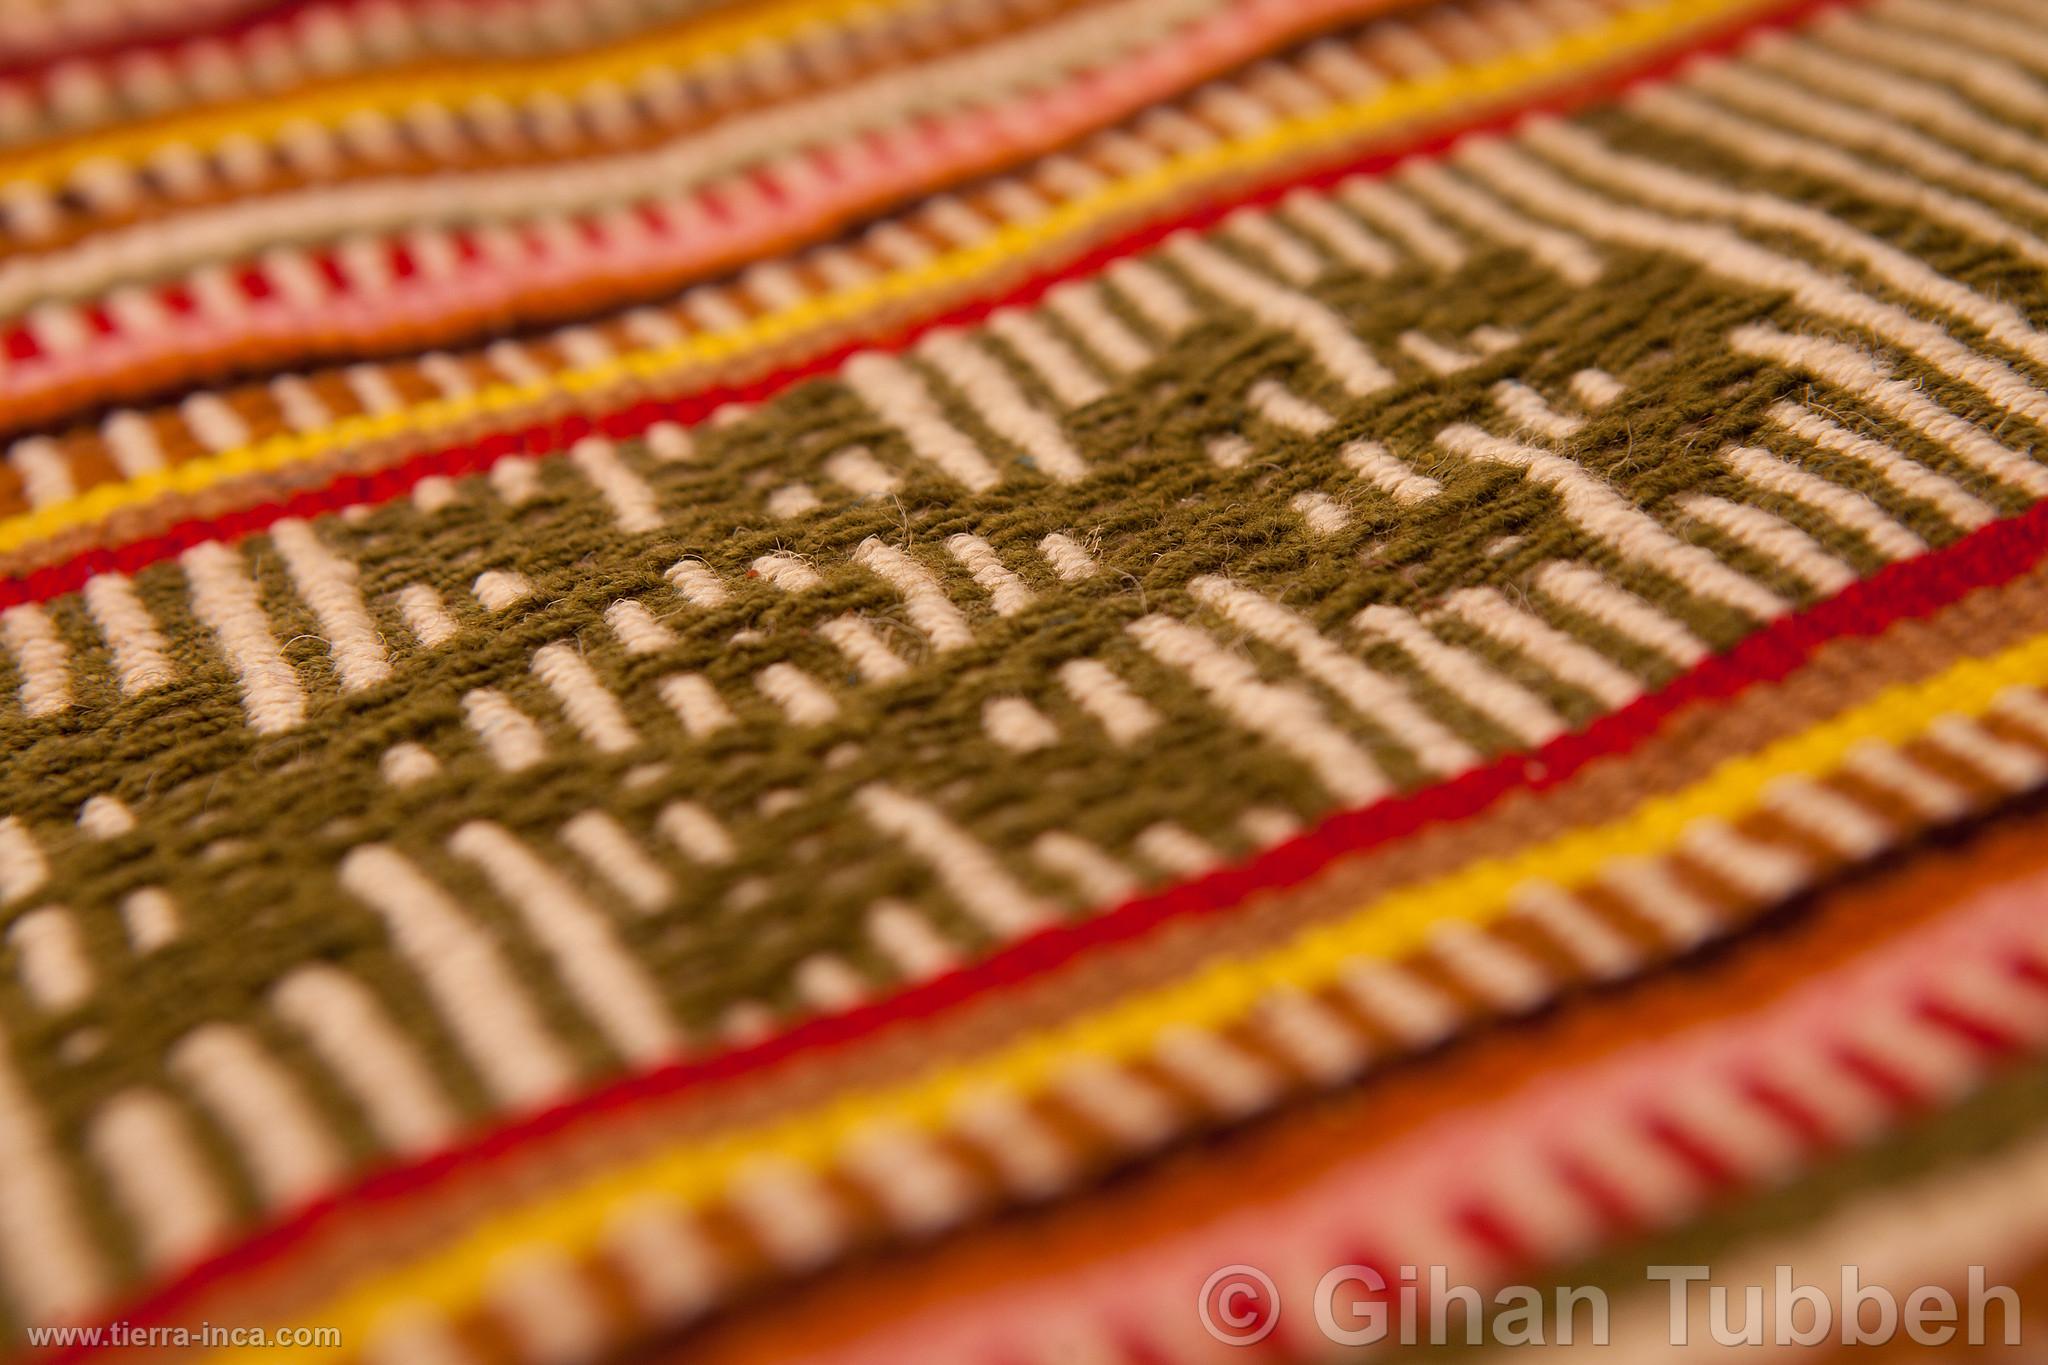 Textil artesanal